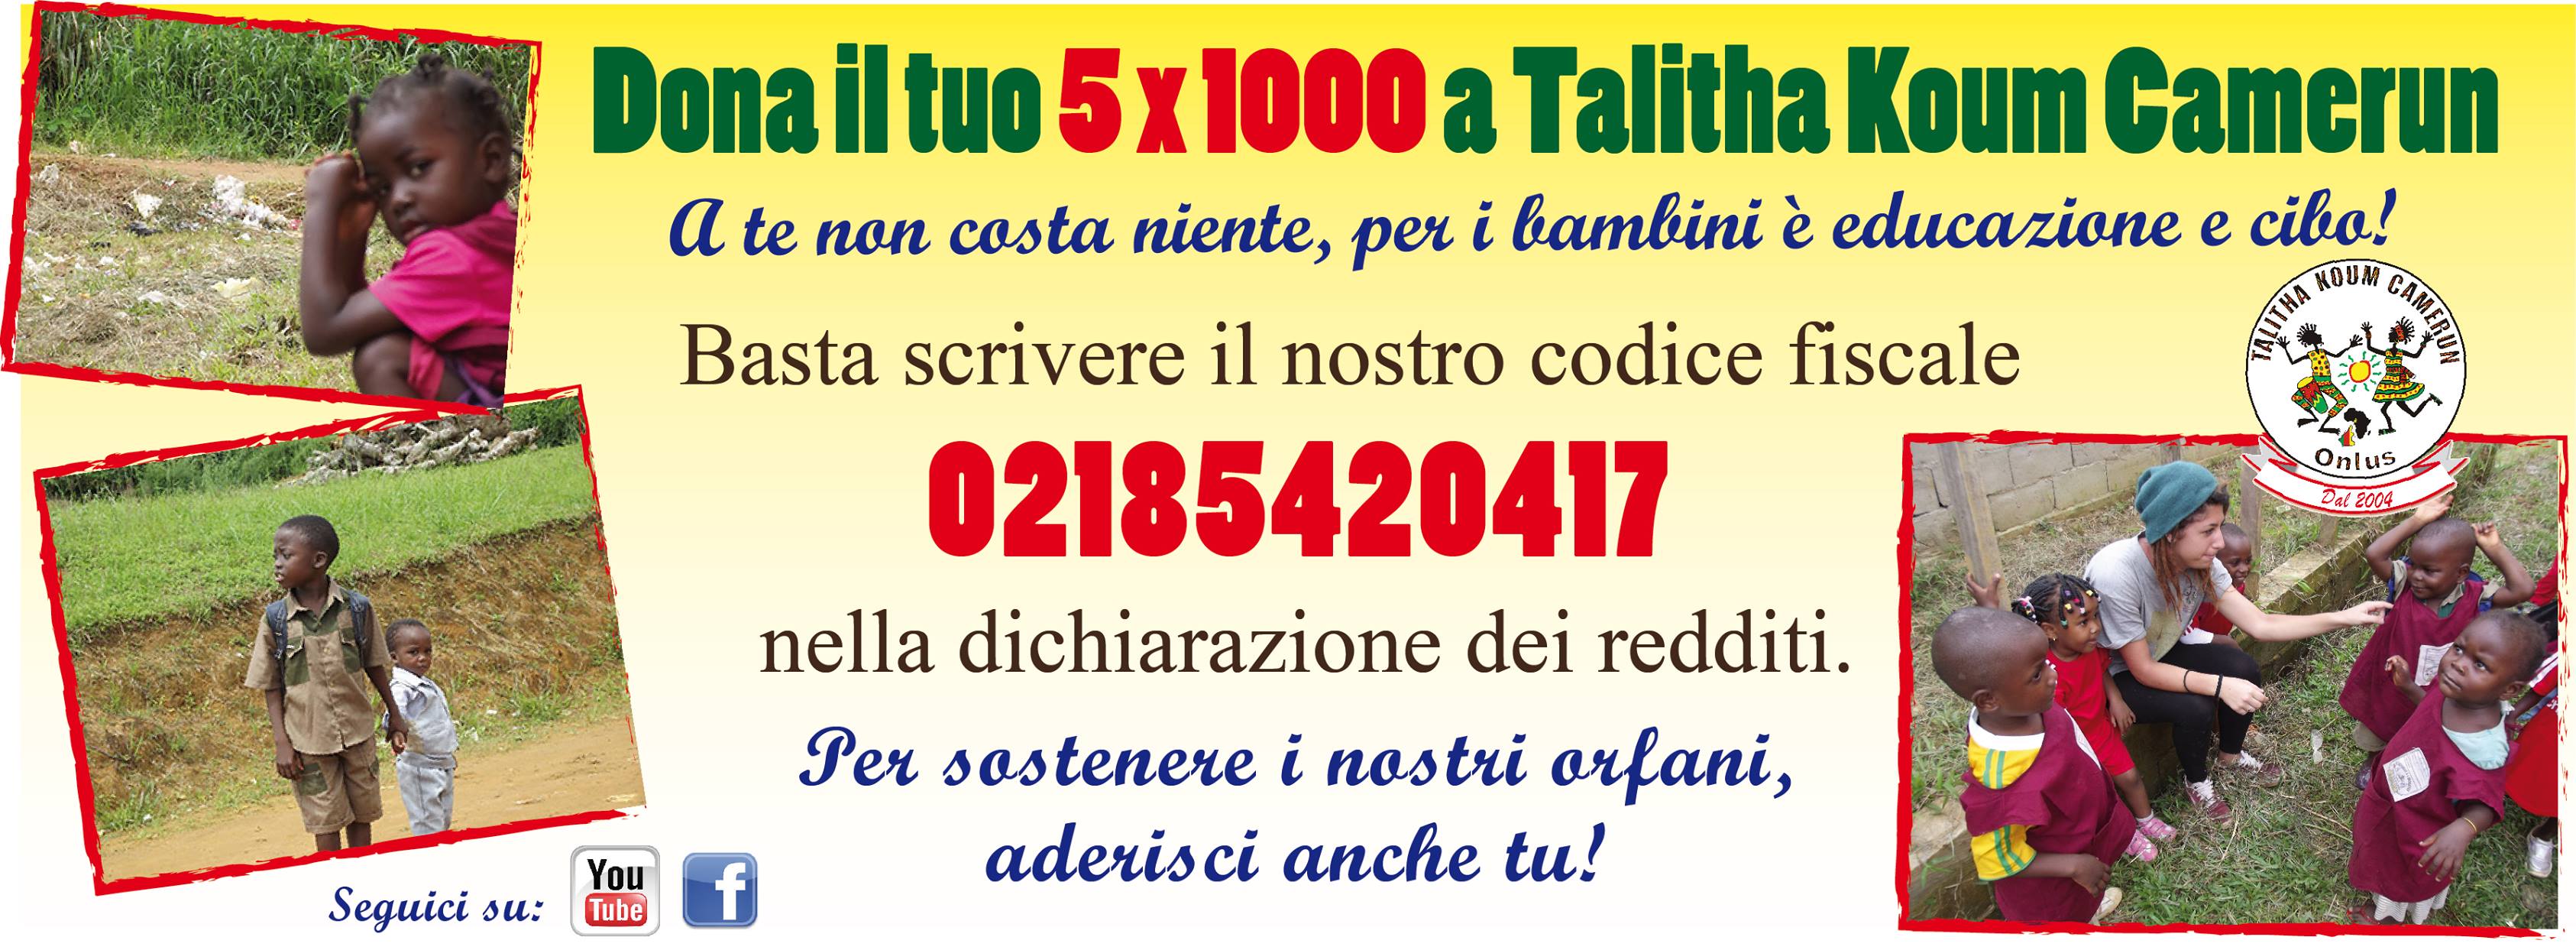 5x1000-talitha